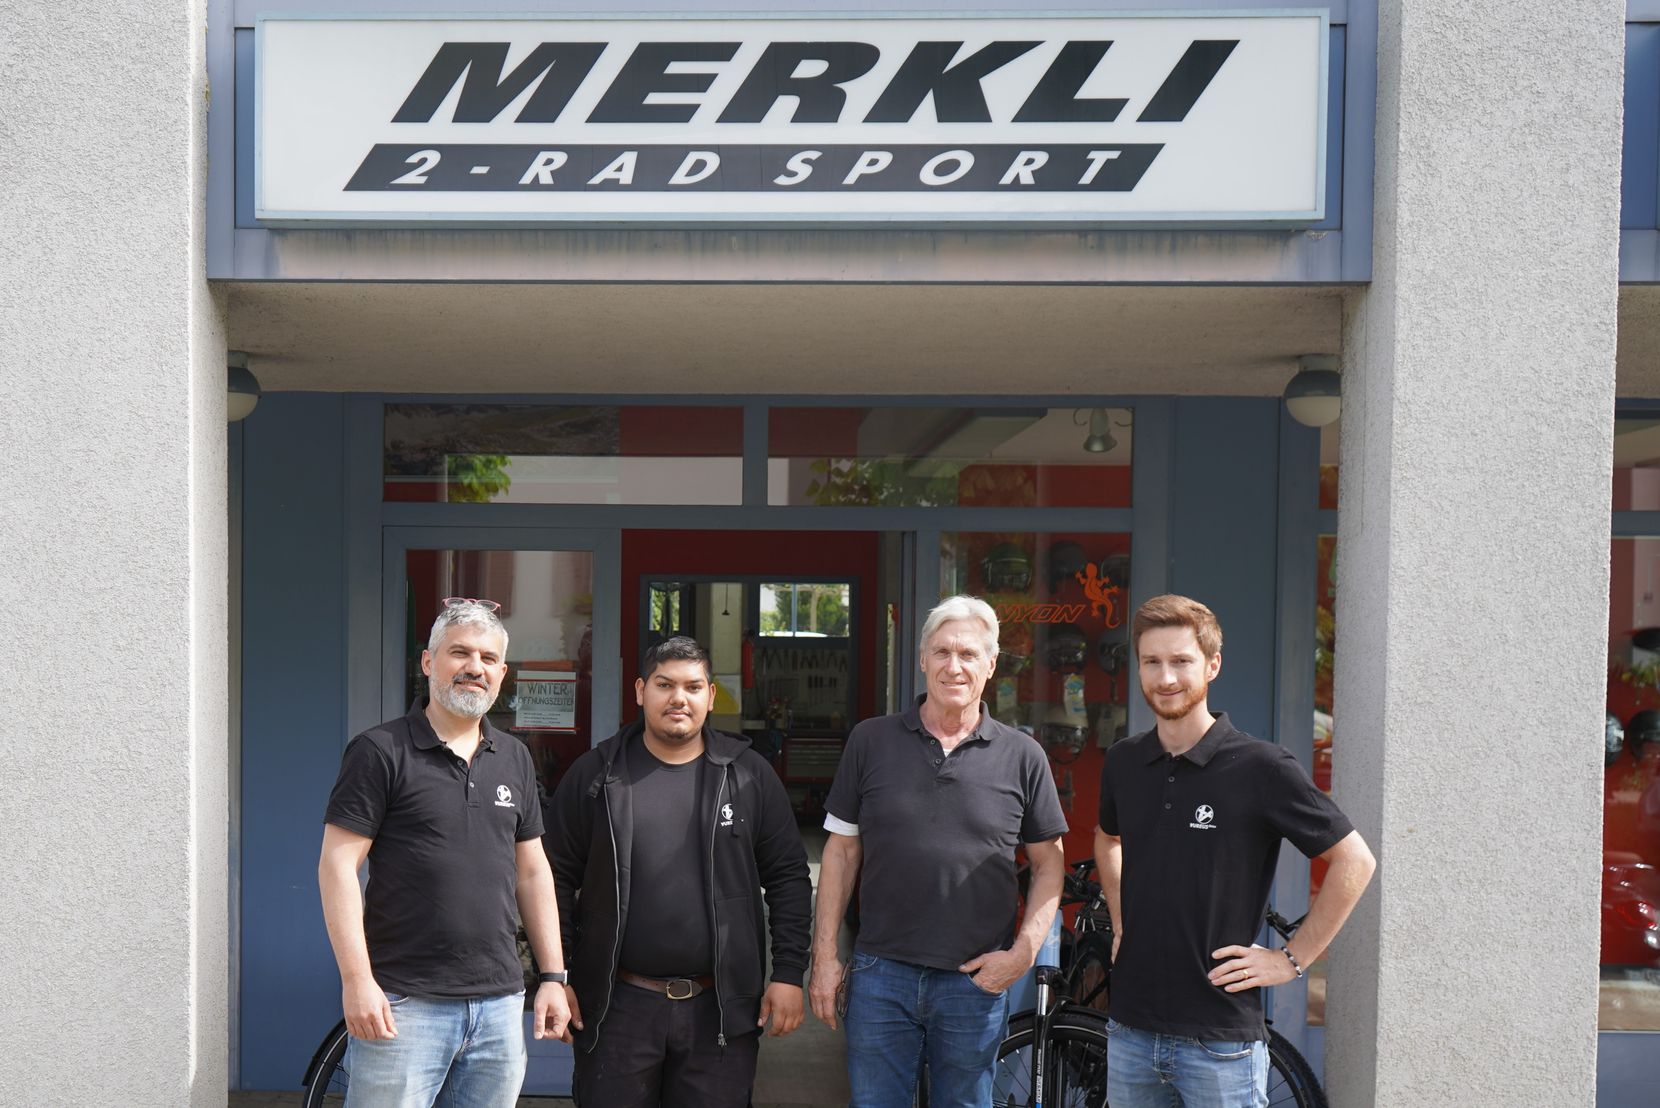 Gruppenbild mit vier Männern vor dem Eingang zu Merkli 2-Rad Sport in Wetzikon.